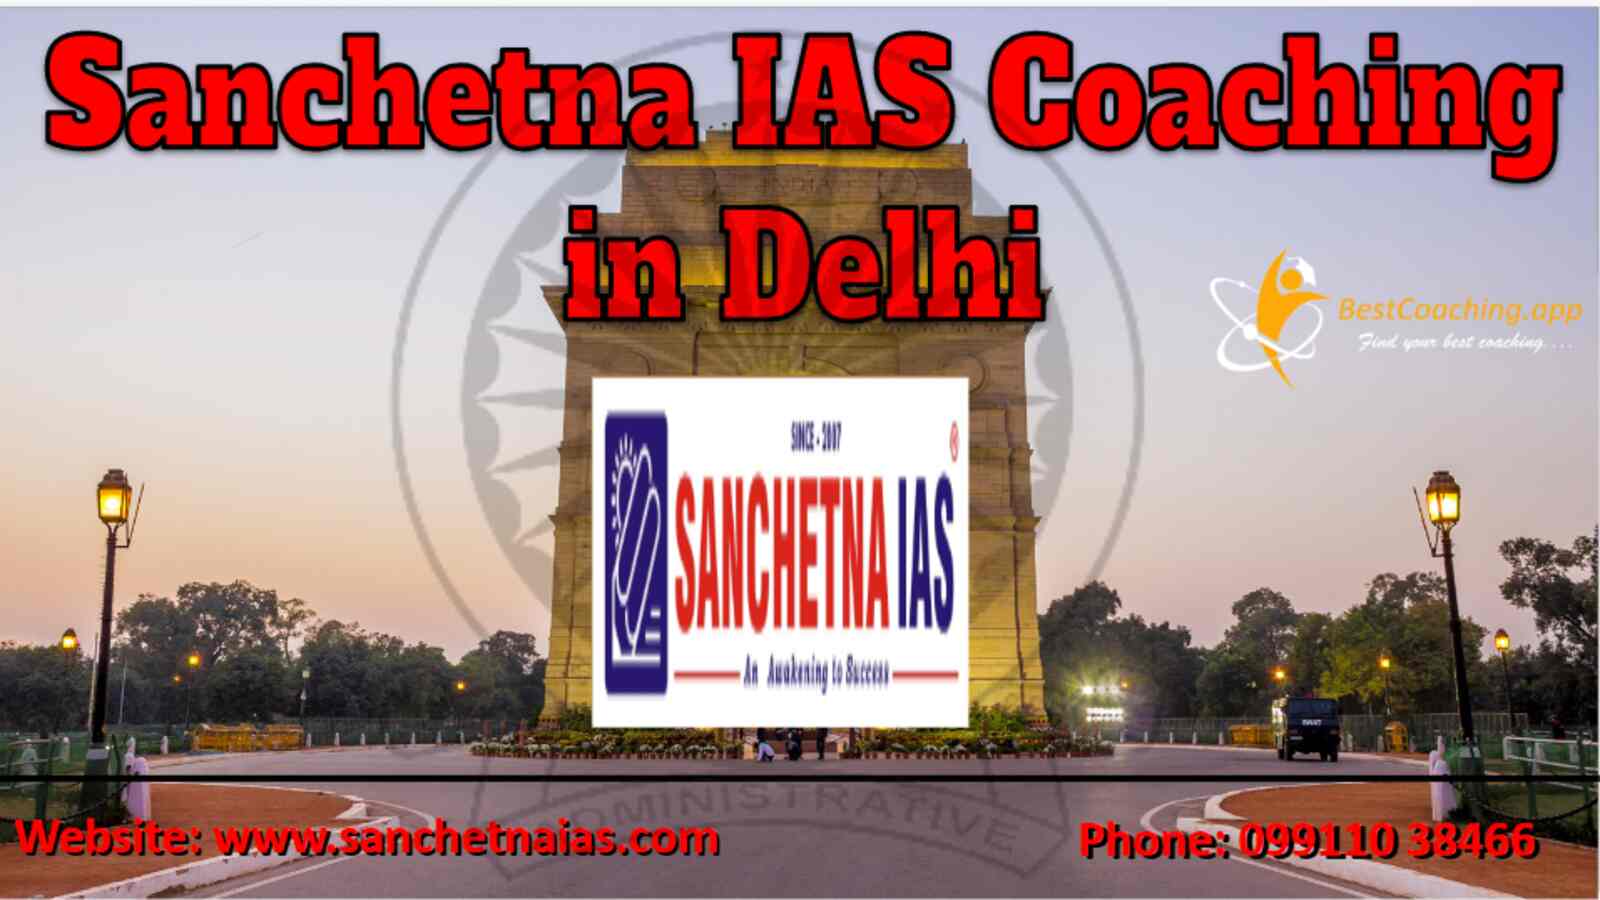 Sanchetna IAS Coaching in Delhi